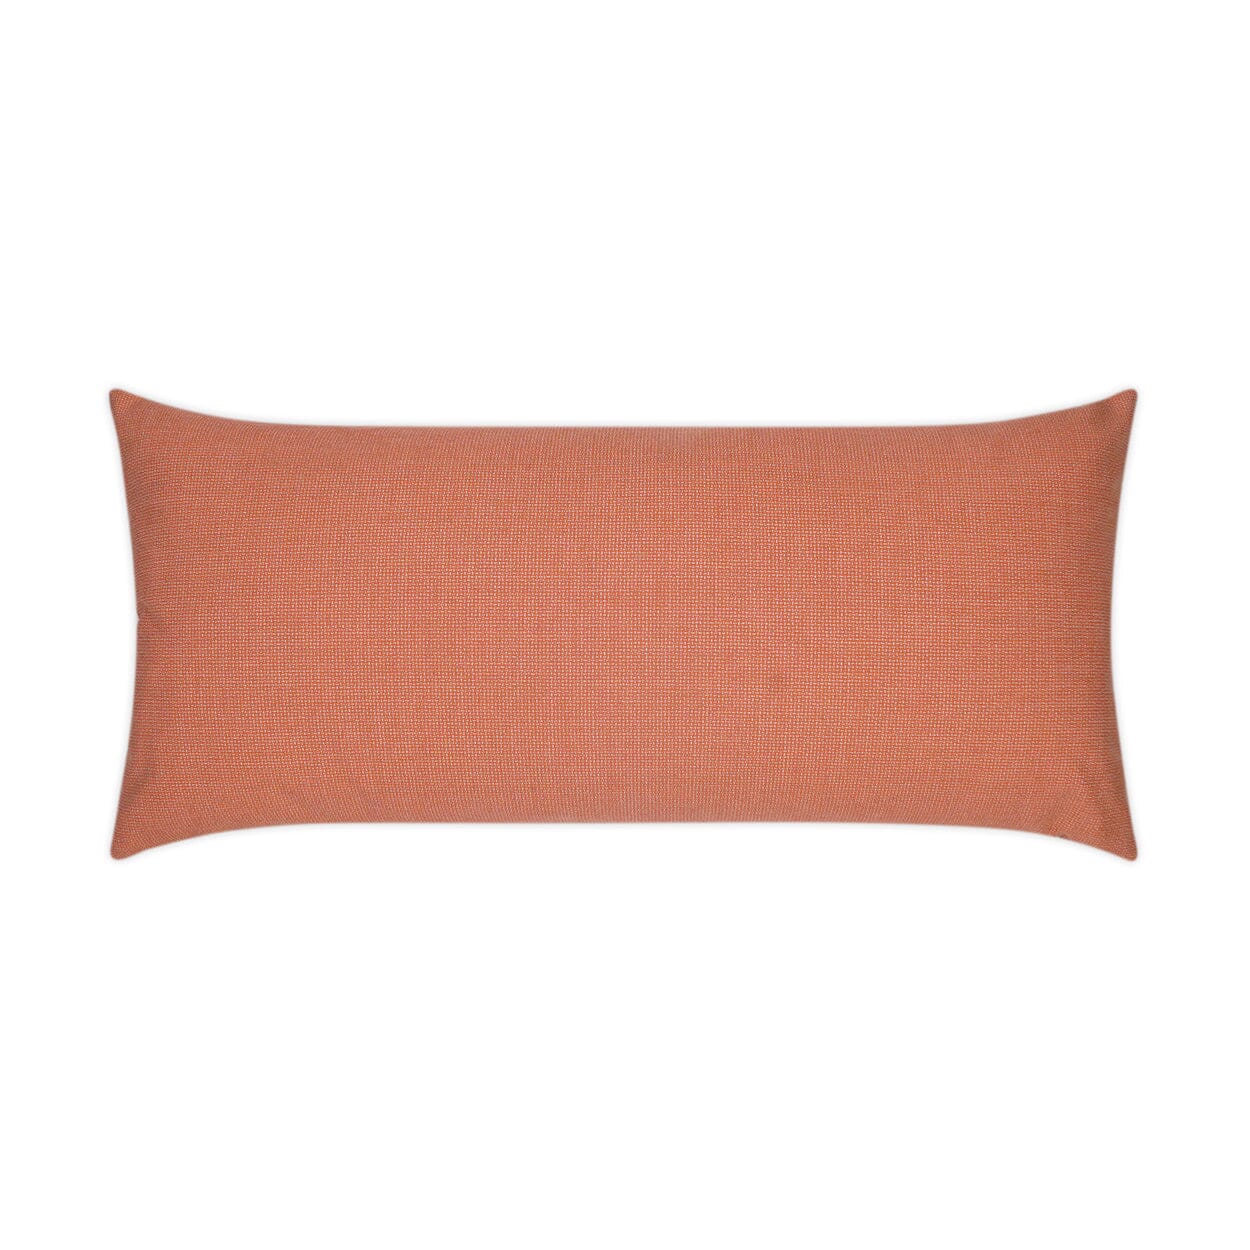 D.V. Kap 12" x 24" Outdoor Lumbar Pillow | Bliss Guava Pillows D.V Kap Outdoor